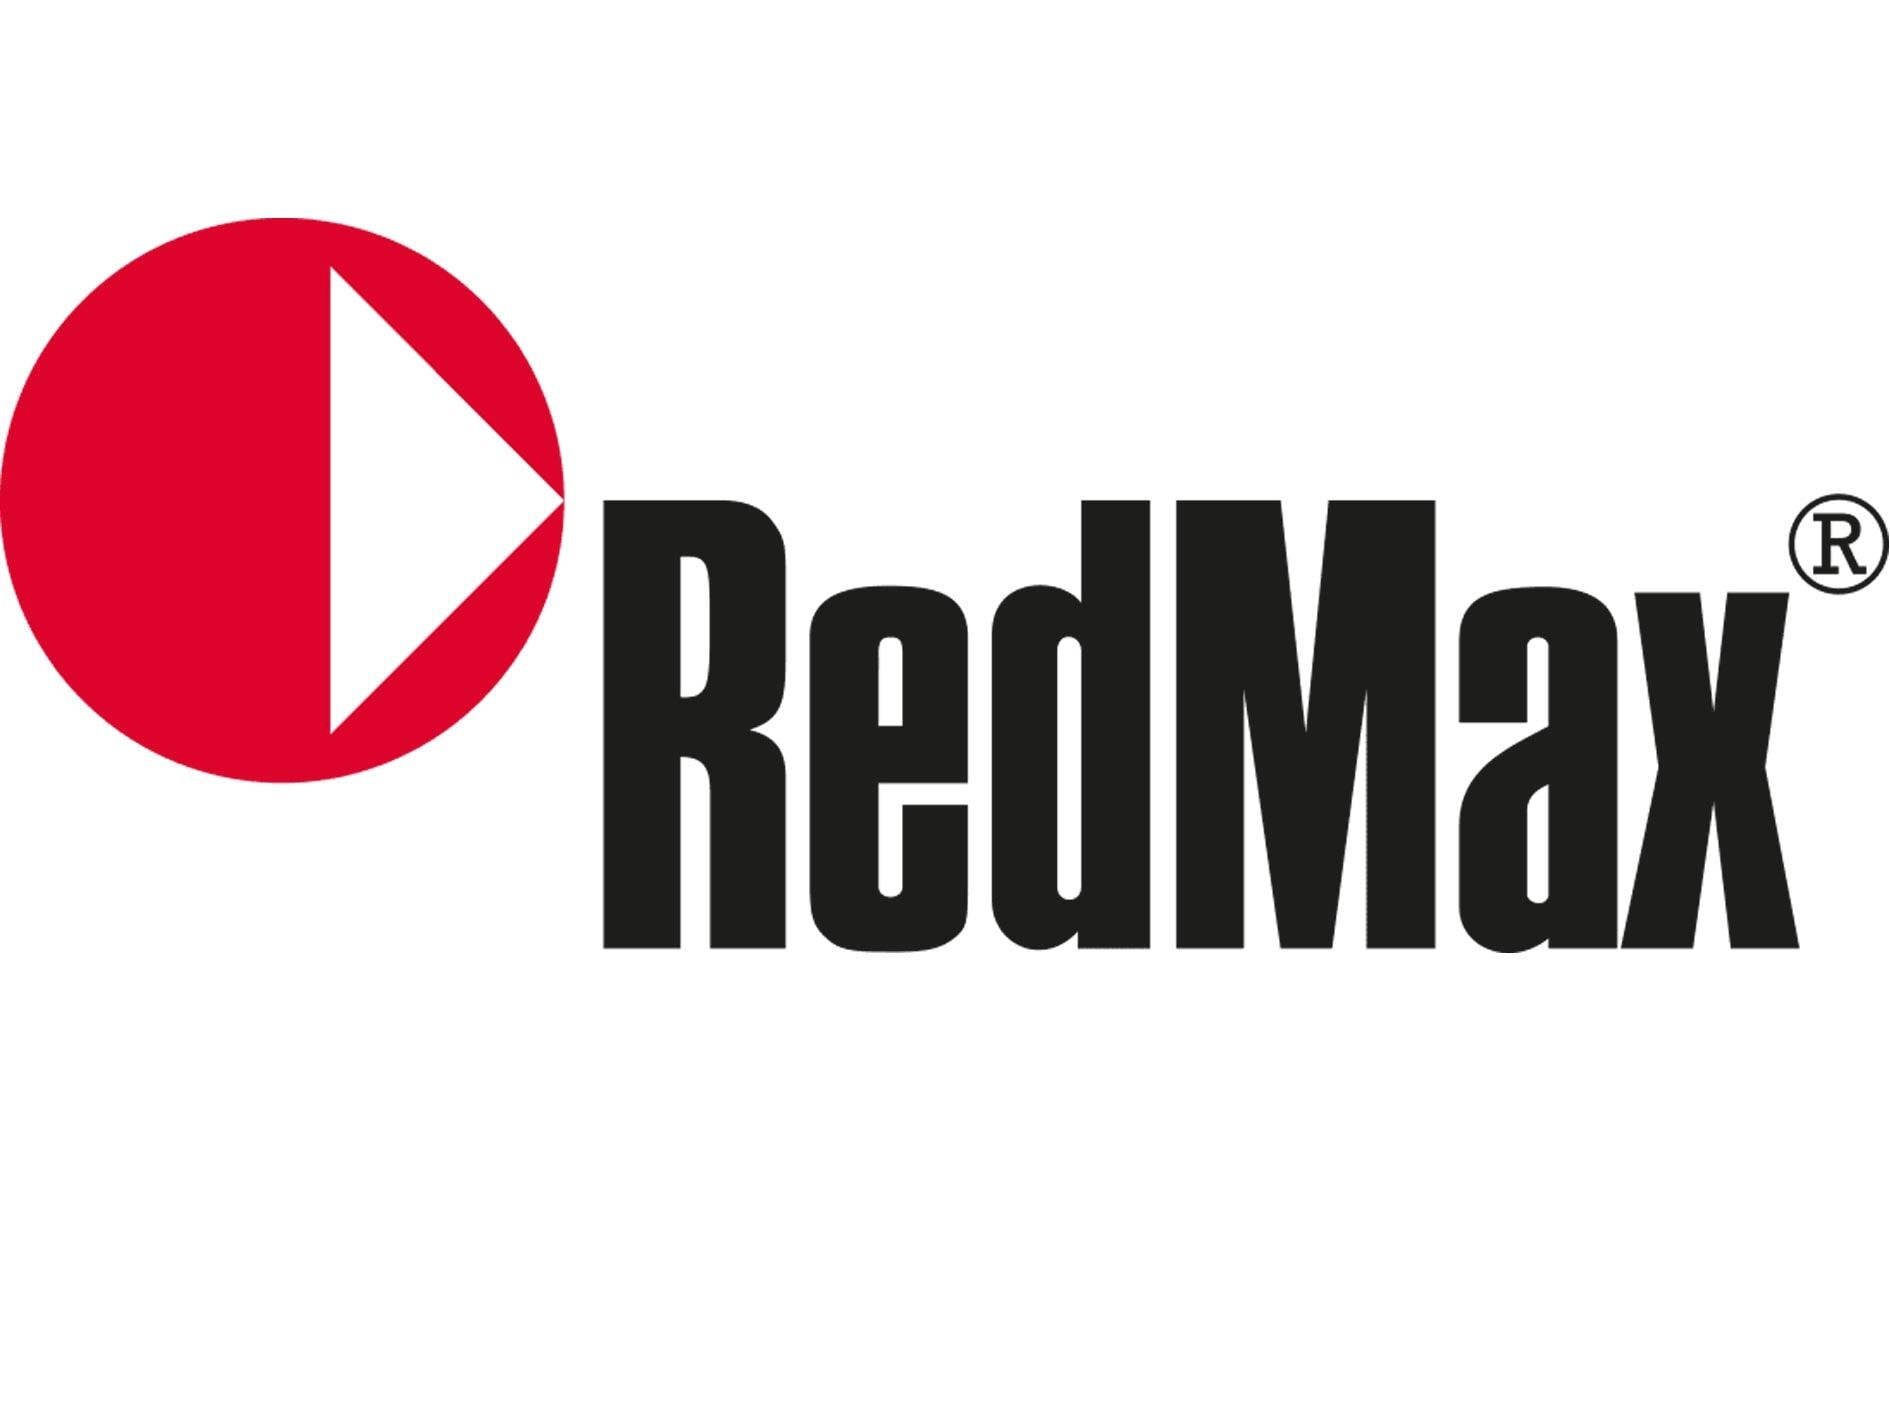 RedMax